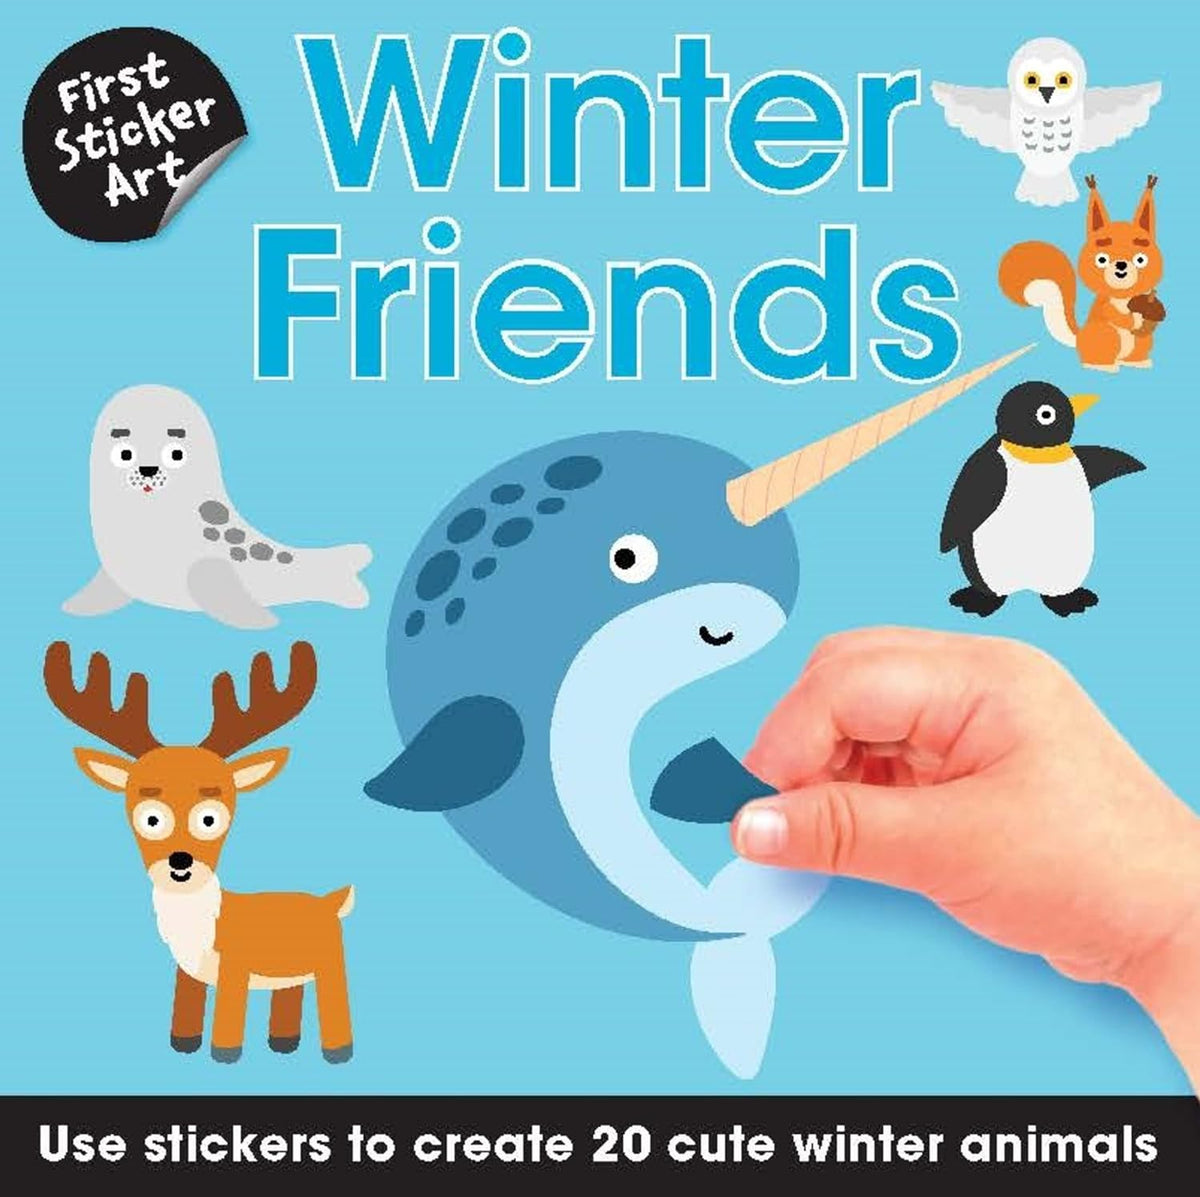 First Sticker Art: Winter Friends